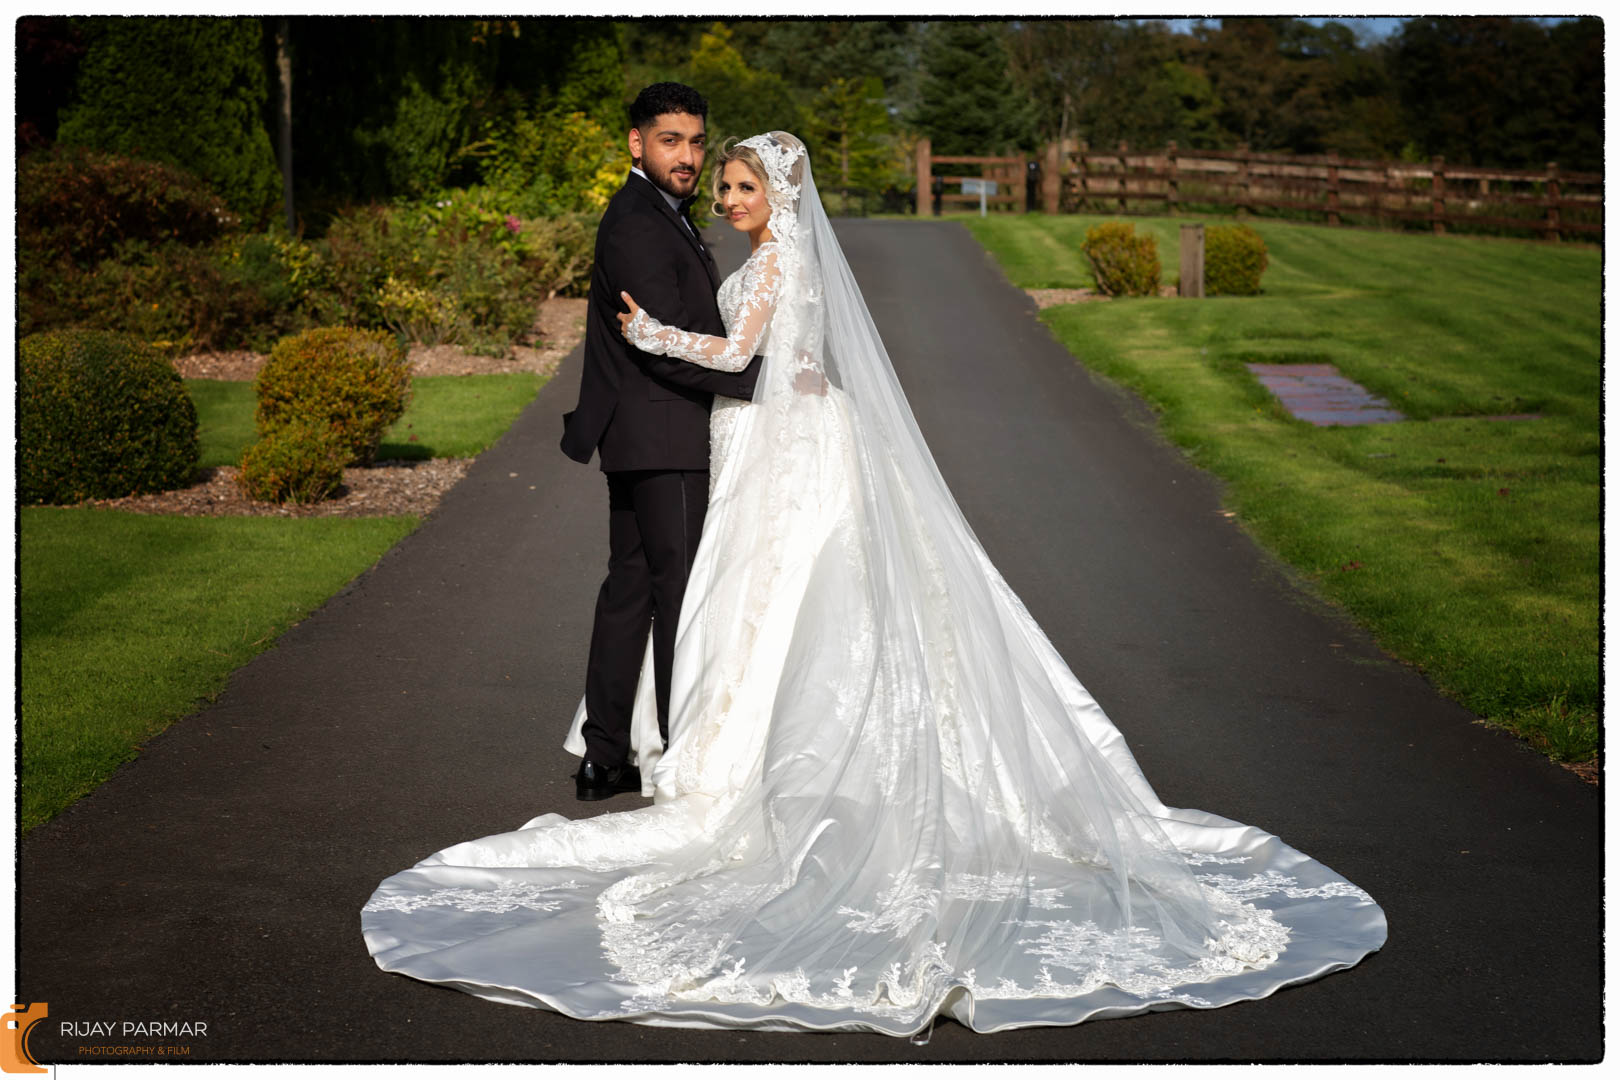 Mariya and Junaid's Indian wedding photography photoshoot Blackburn (12 of 17)